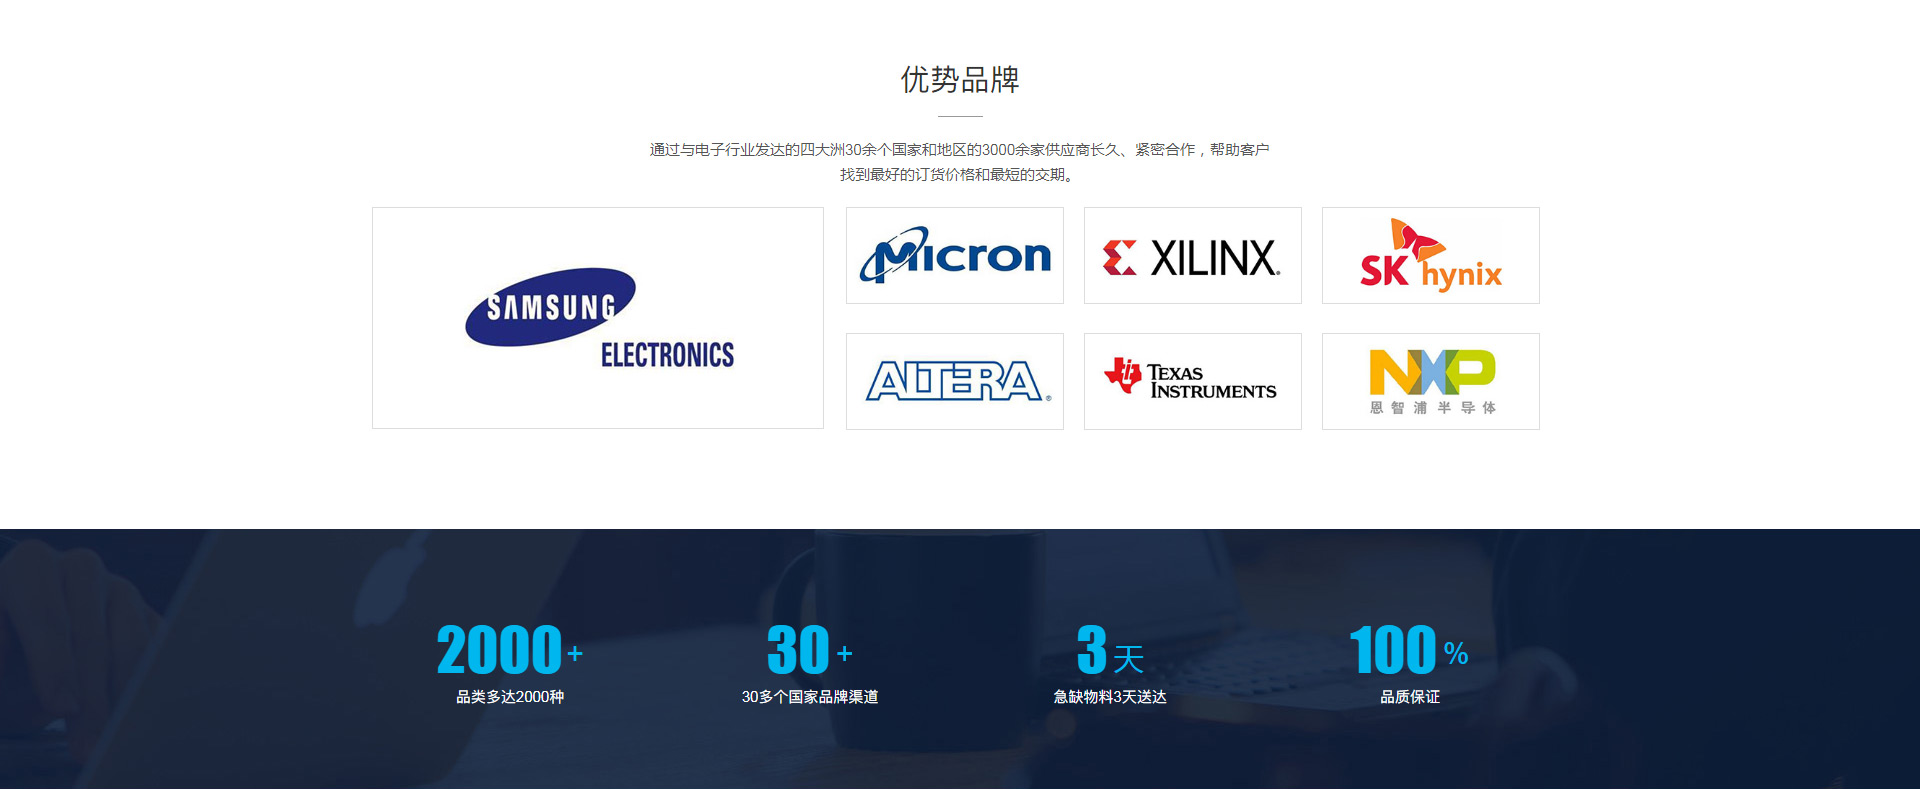 深圳网站建设公司 电子元器件网站模板